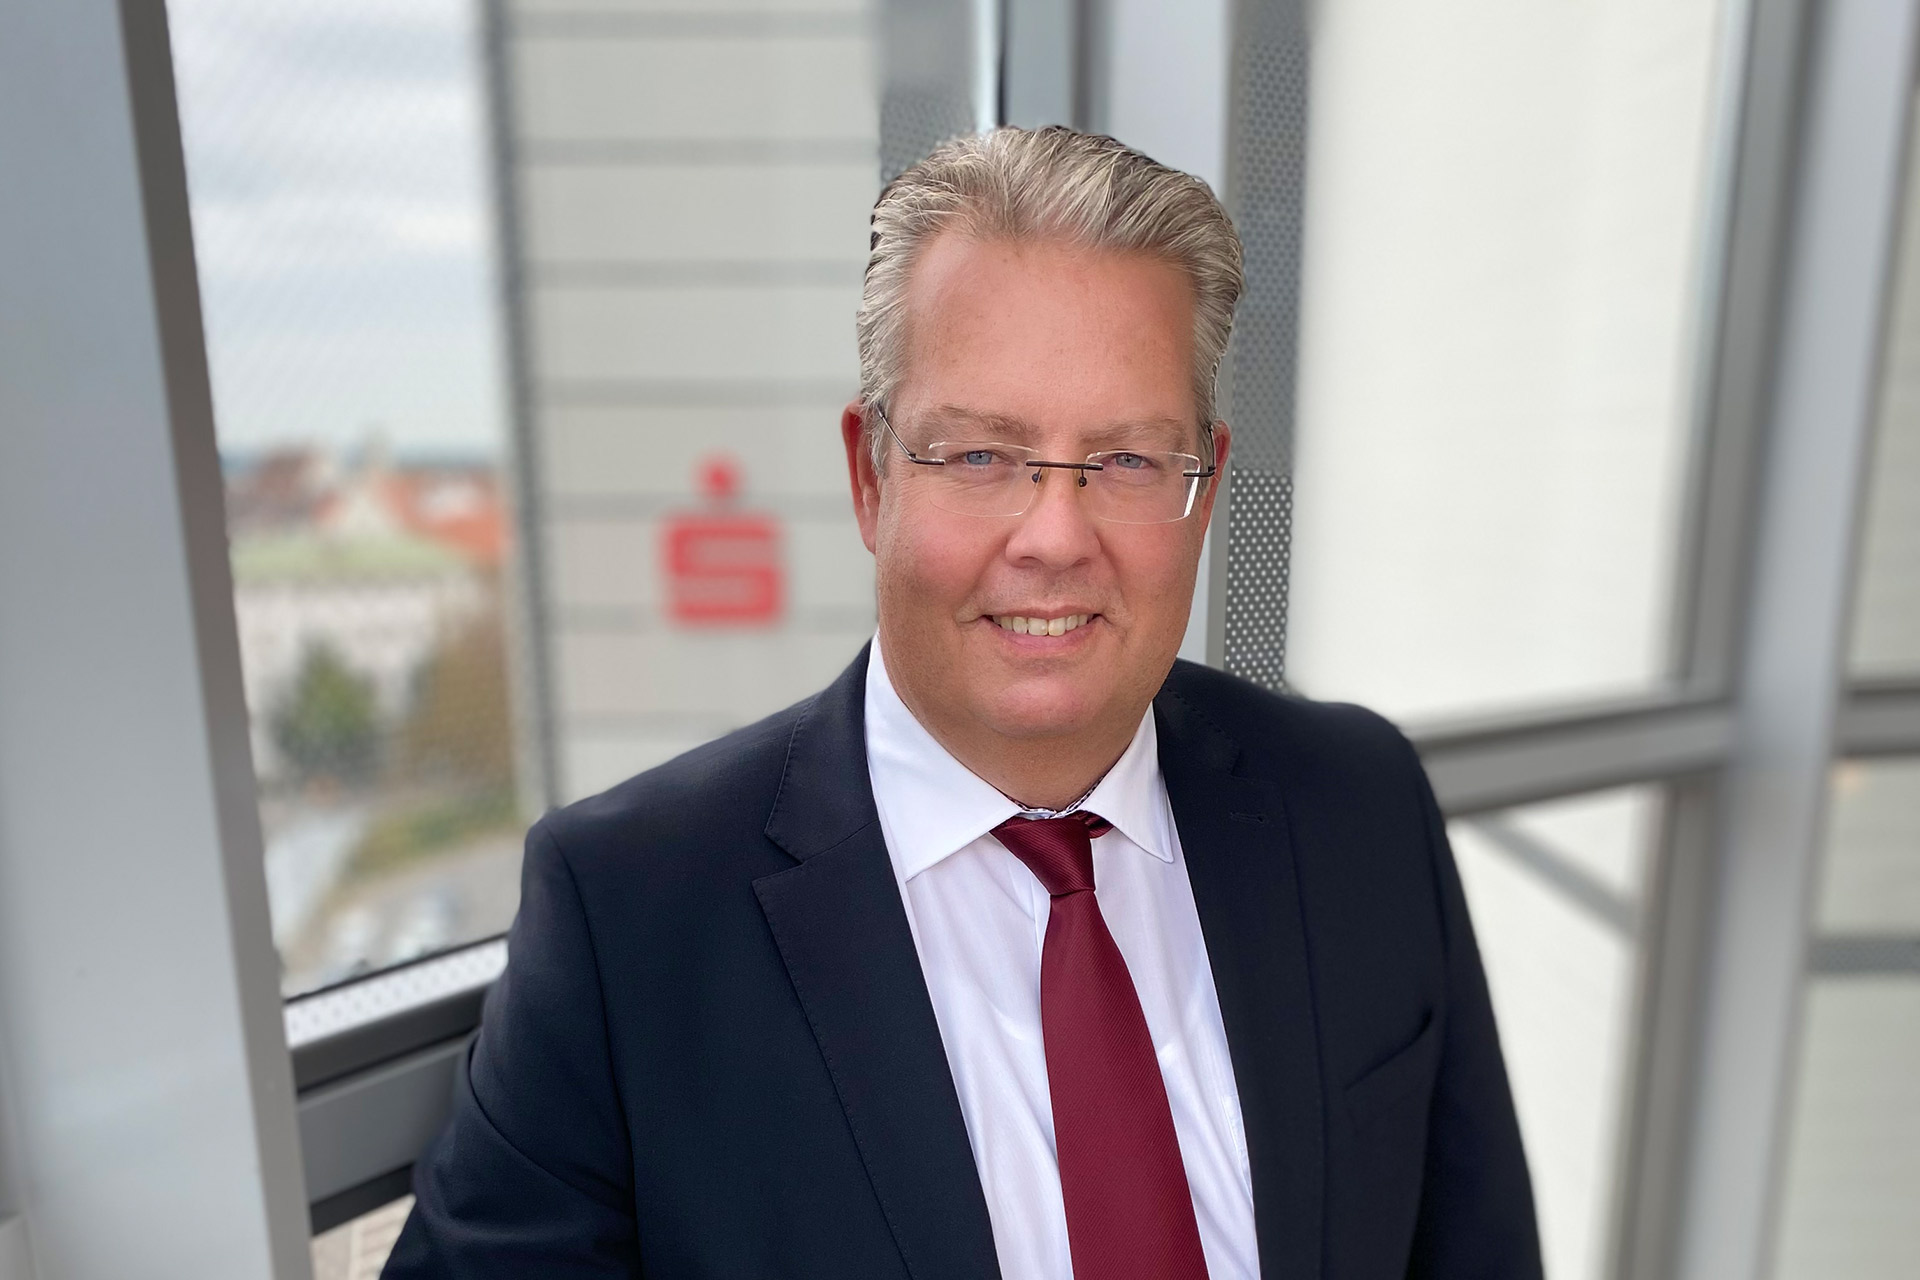 Der Verwaltungsrat der Stadtsparkasse Augsburg hat Michael Kramer, Bereichsleiter Center.Unternehmenskunden, zum 1. Oktober 2022 zum stellvertretenden Vorstandsmitglied bestellt.